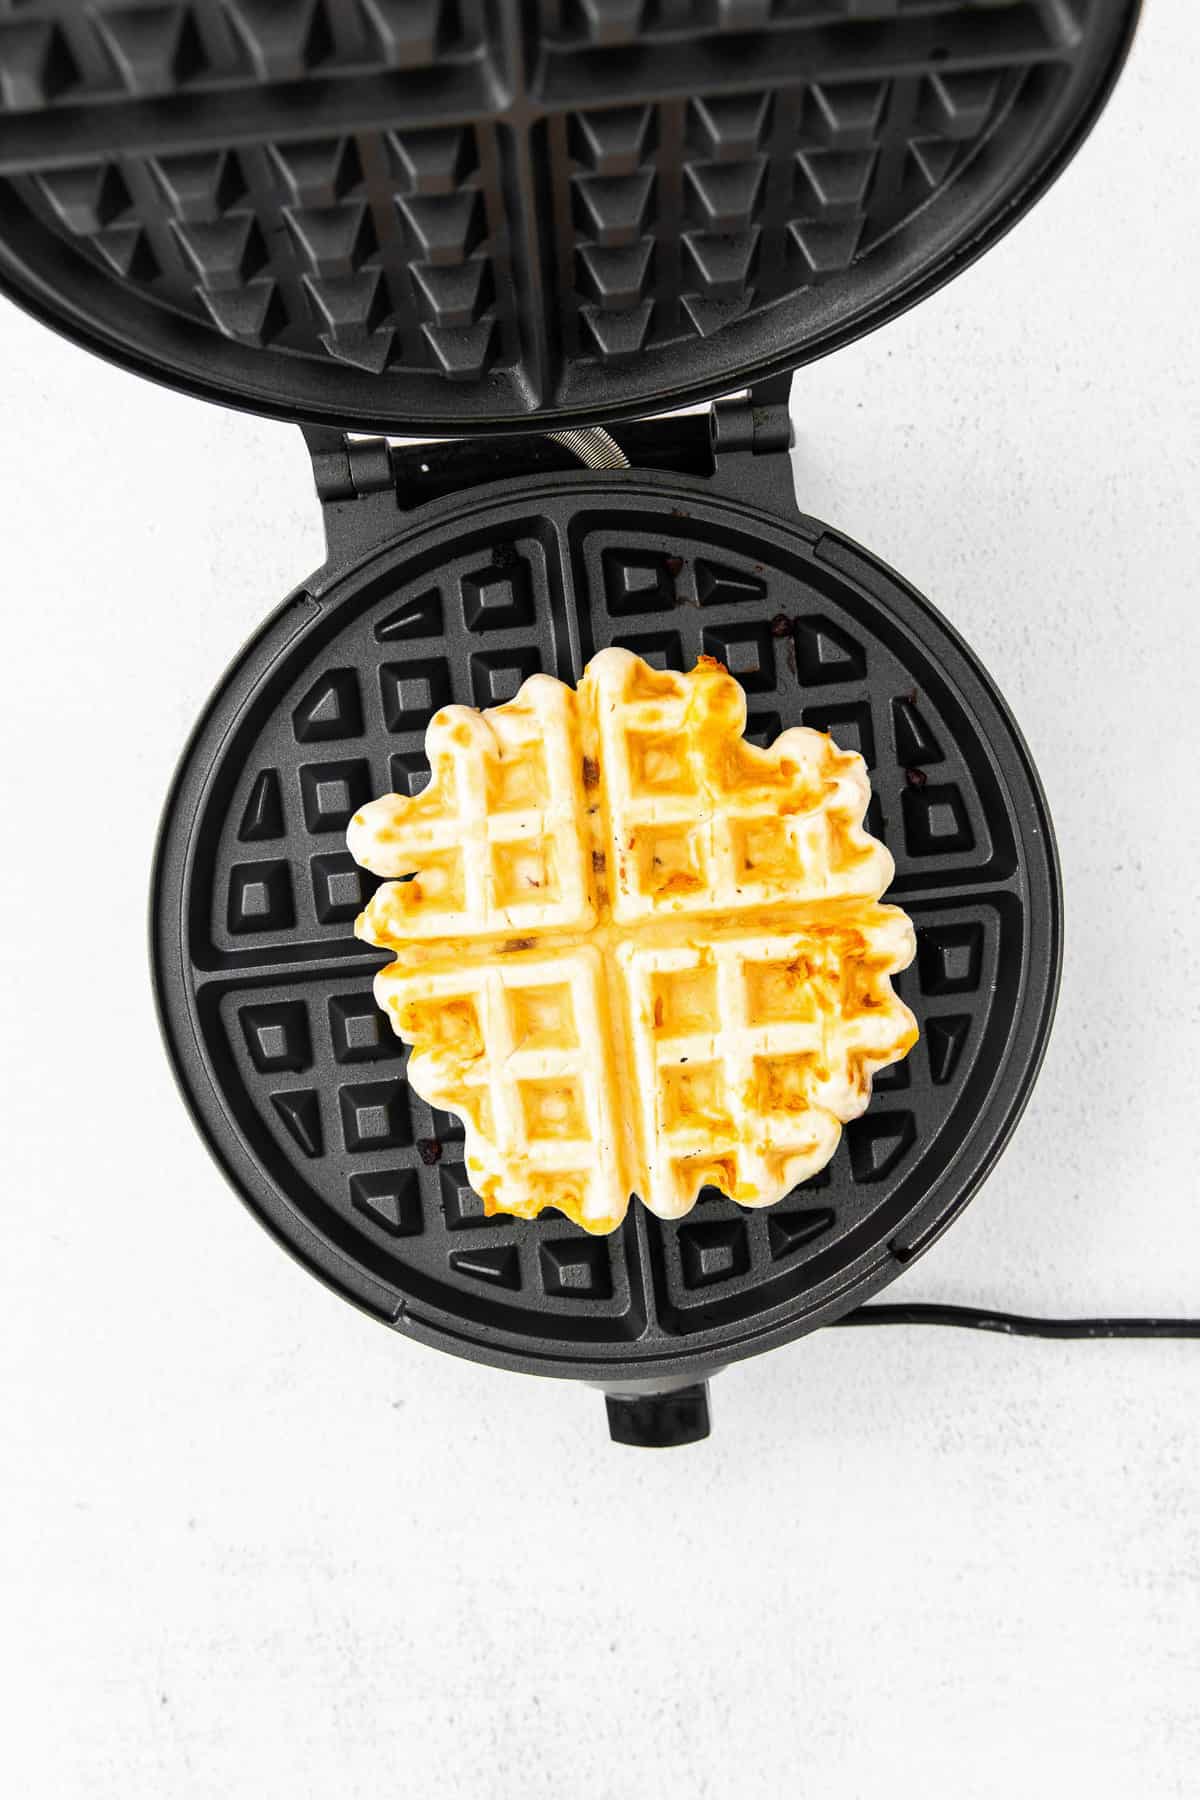 Waffle in waffle iron.